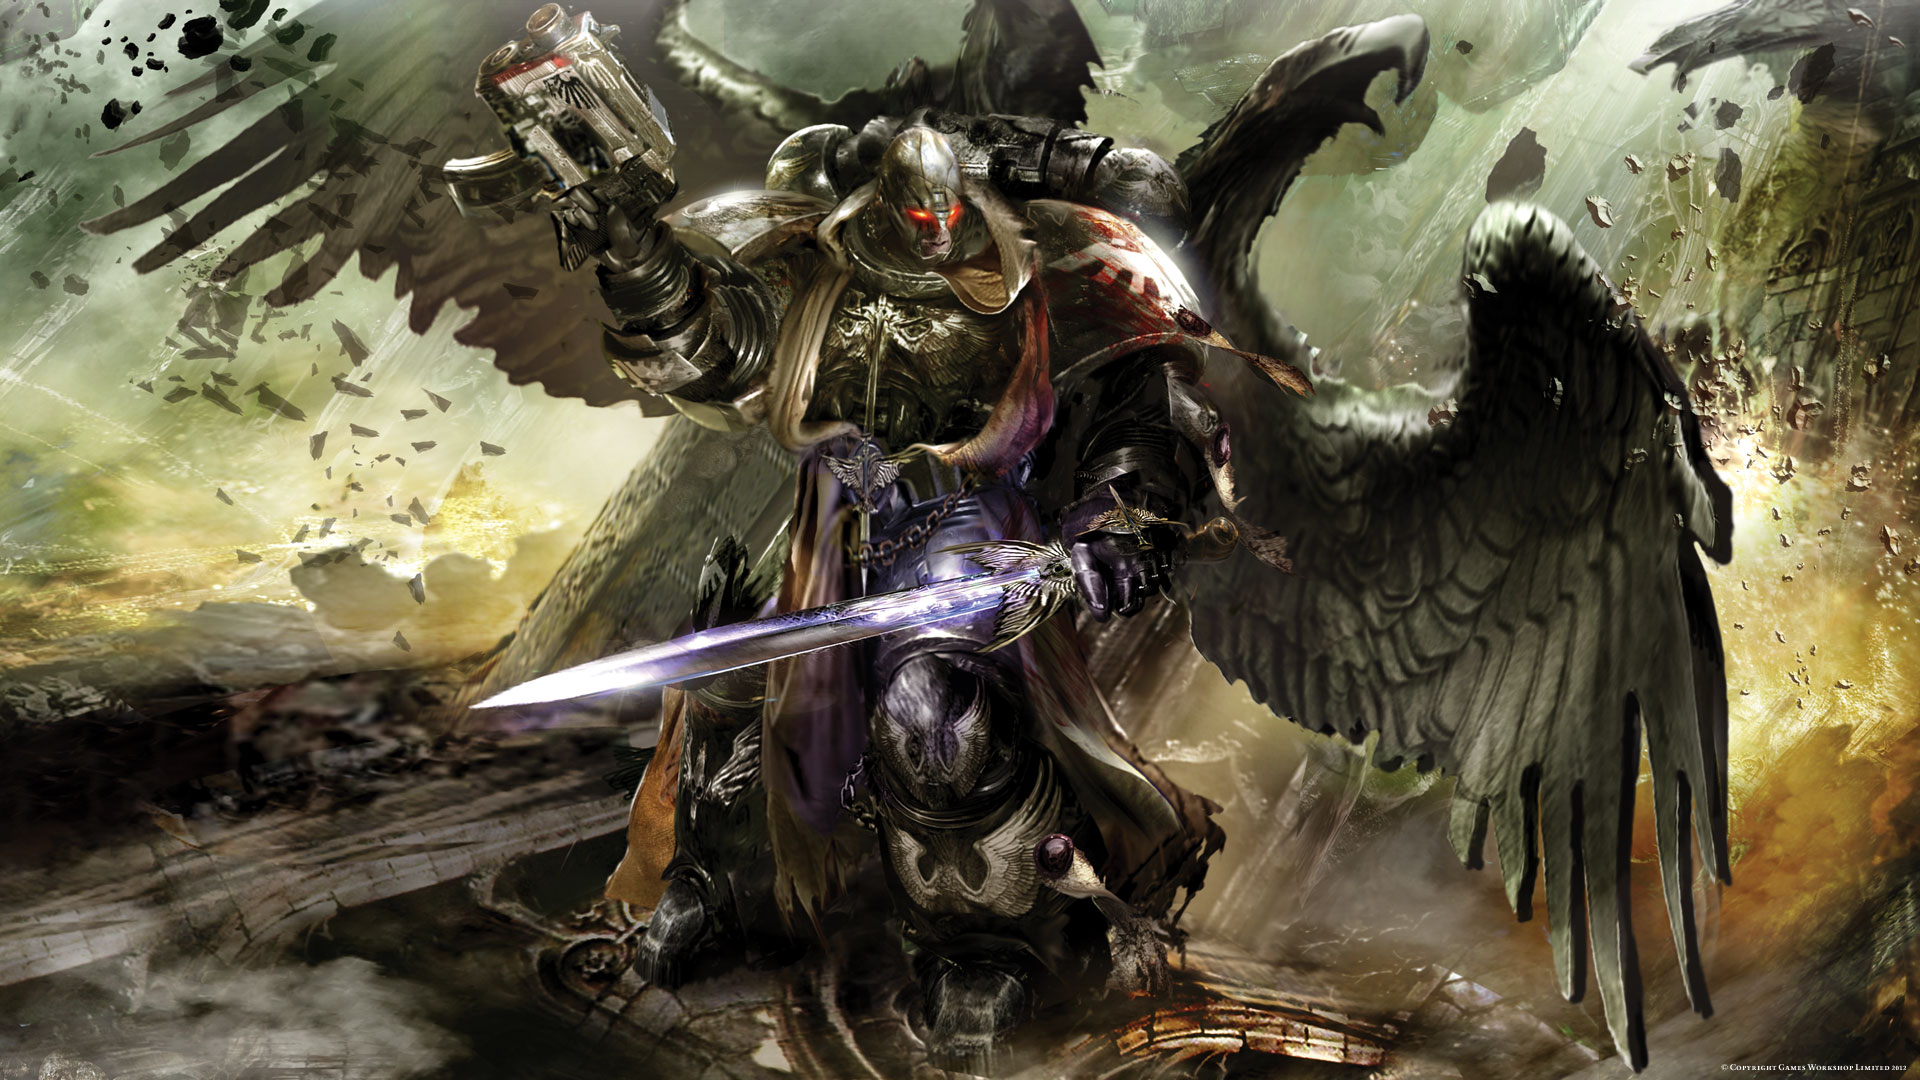 warhammer 40k fondo de pantalla hd,juego de acción y aventura,demonio,cg artwork,personaje de ficción,mitología